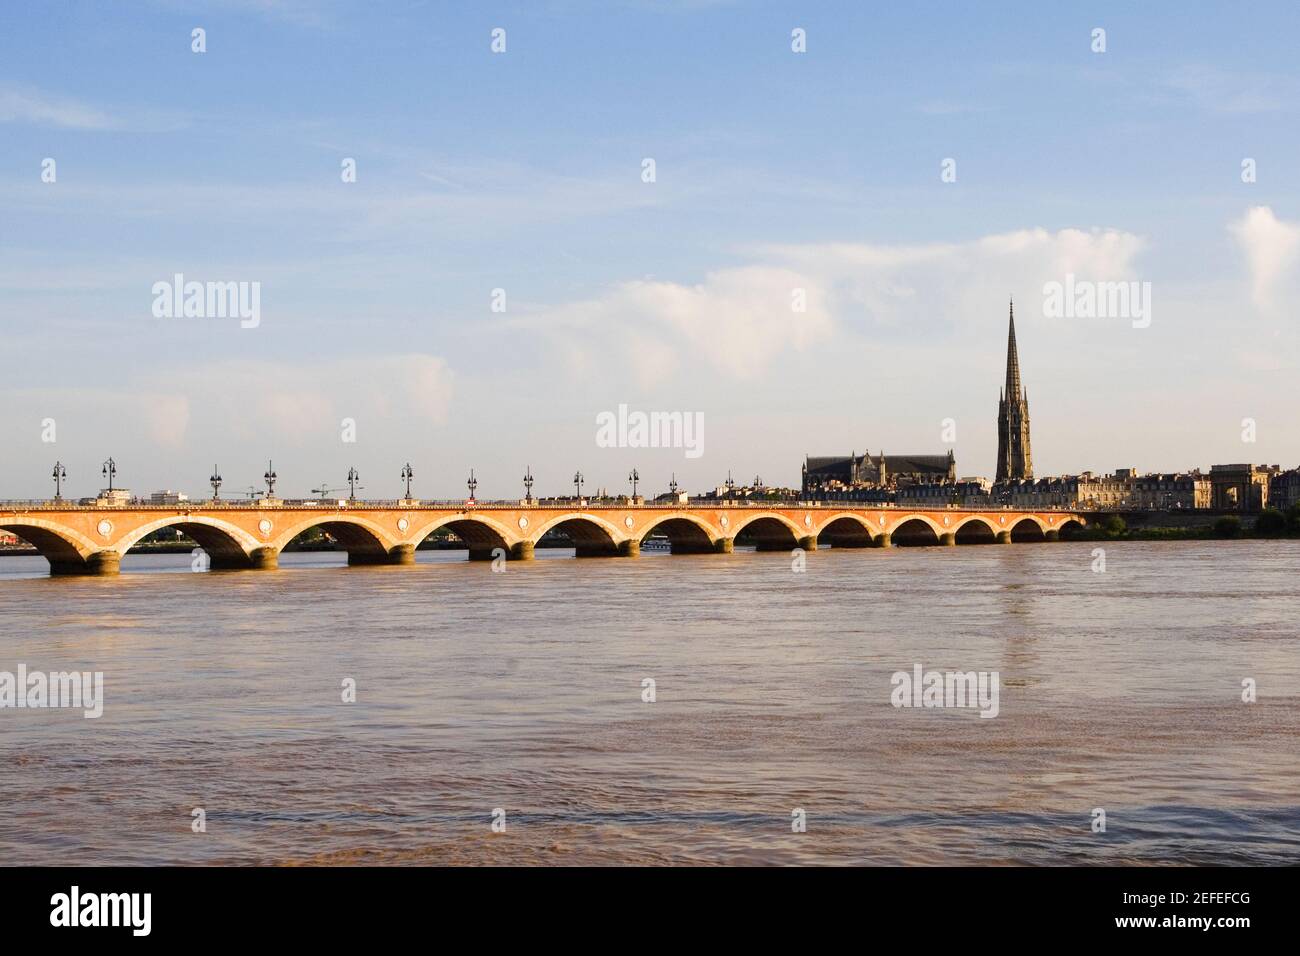 Arch bridge across a river, Pont De Pierre, St. Michel Basilica, Garonne River, Bordeaux, Aquitaine, France Stock Photo